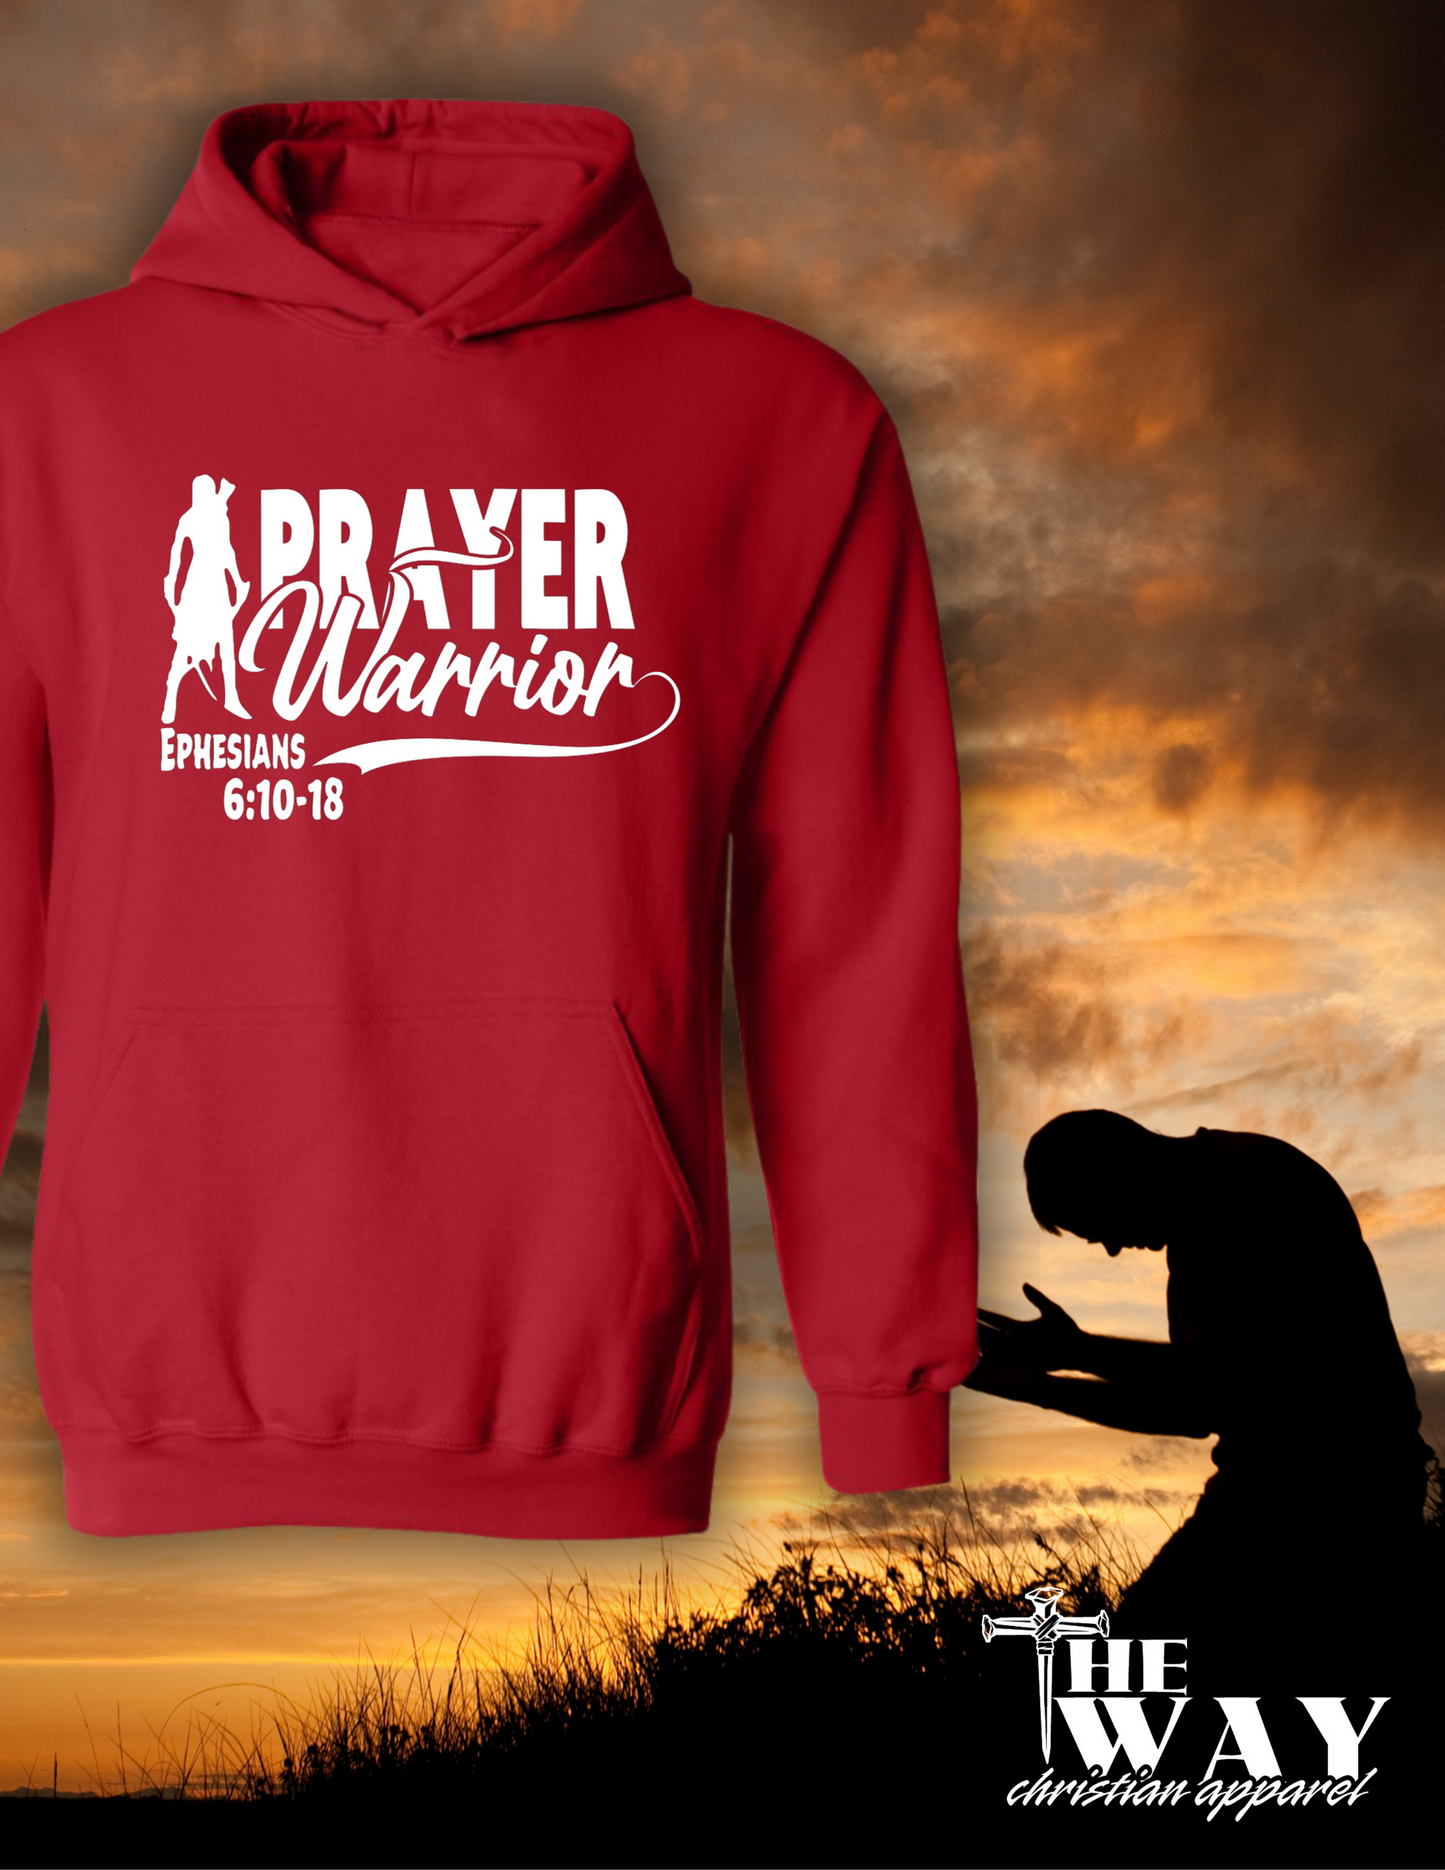 Prayer Warrior Hoodie